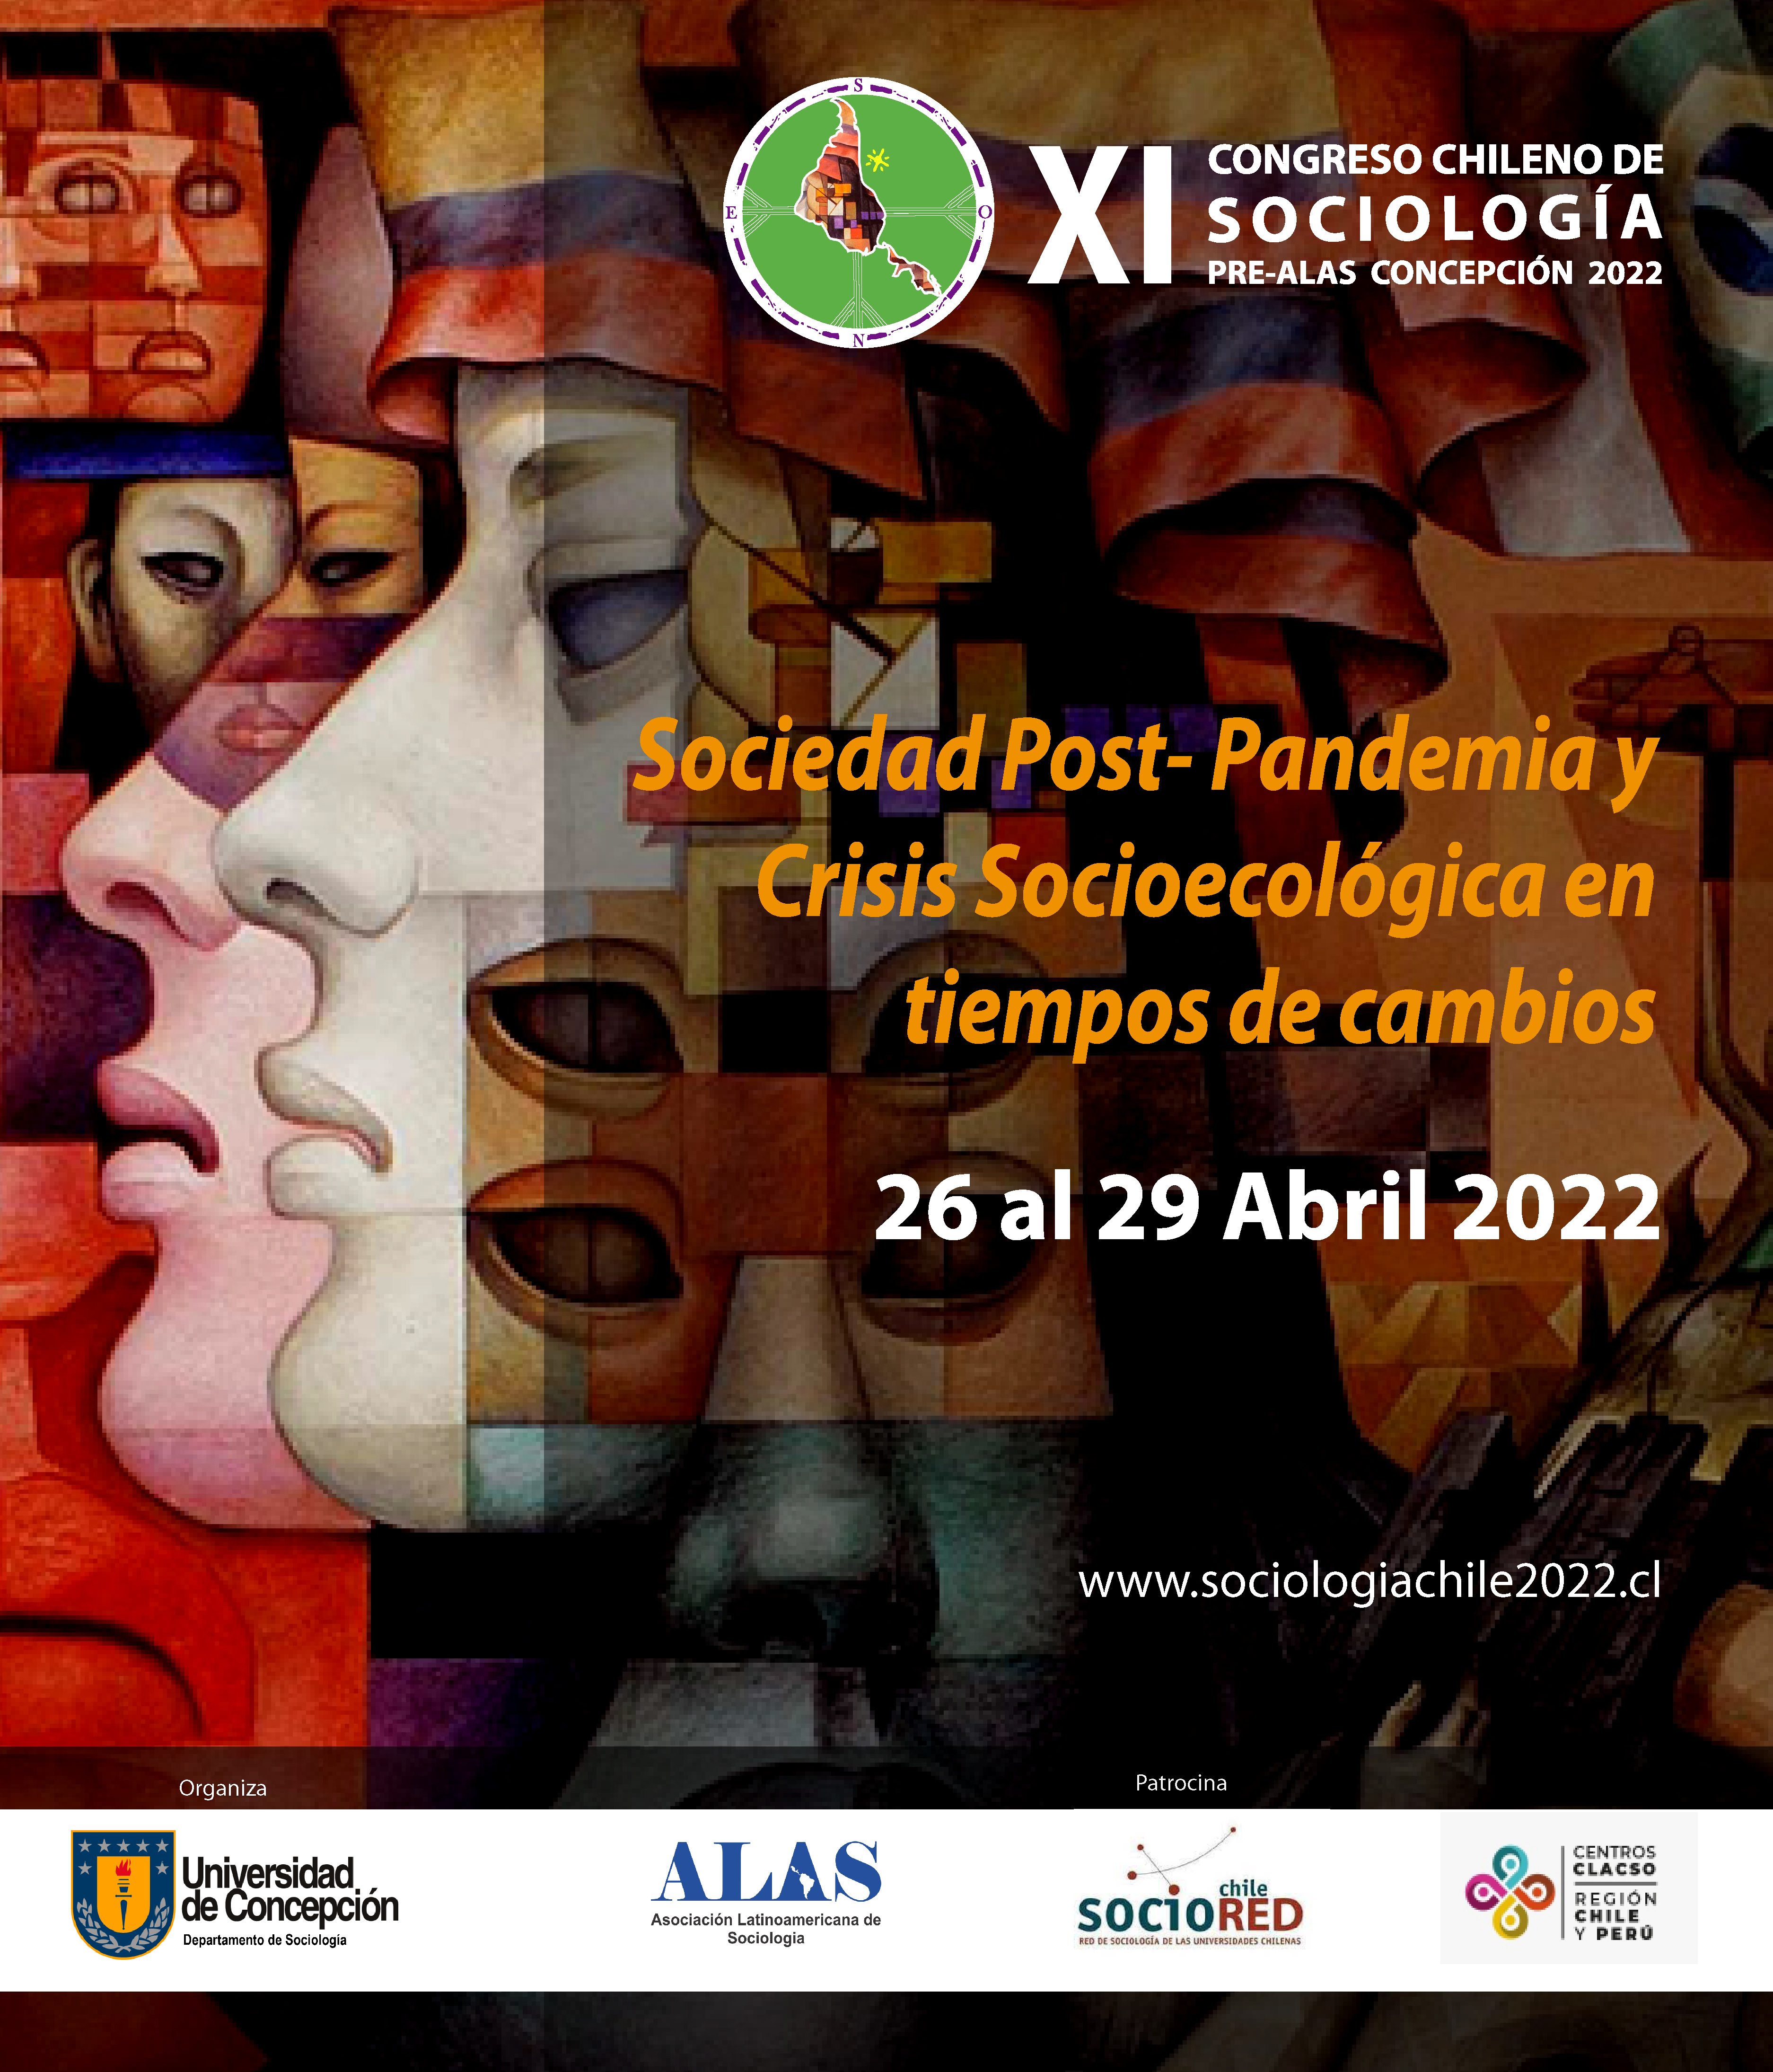 Miembros del Doctorado en Ciencias Ambientales encabezan organización del XI Congreso Chileno de Sociología y Encuentro Pre-ALAS 2022 en la UdeC